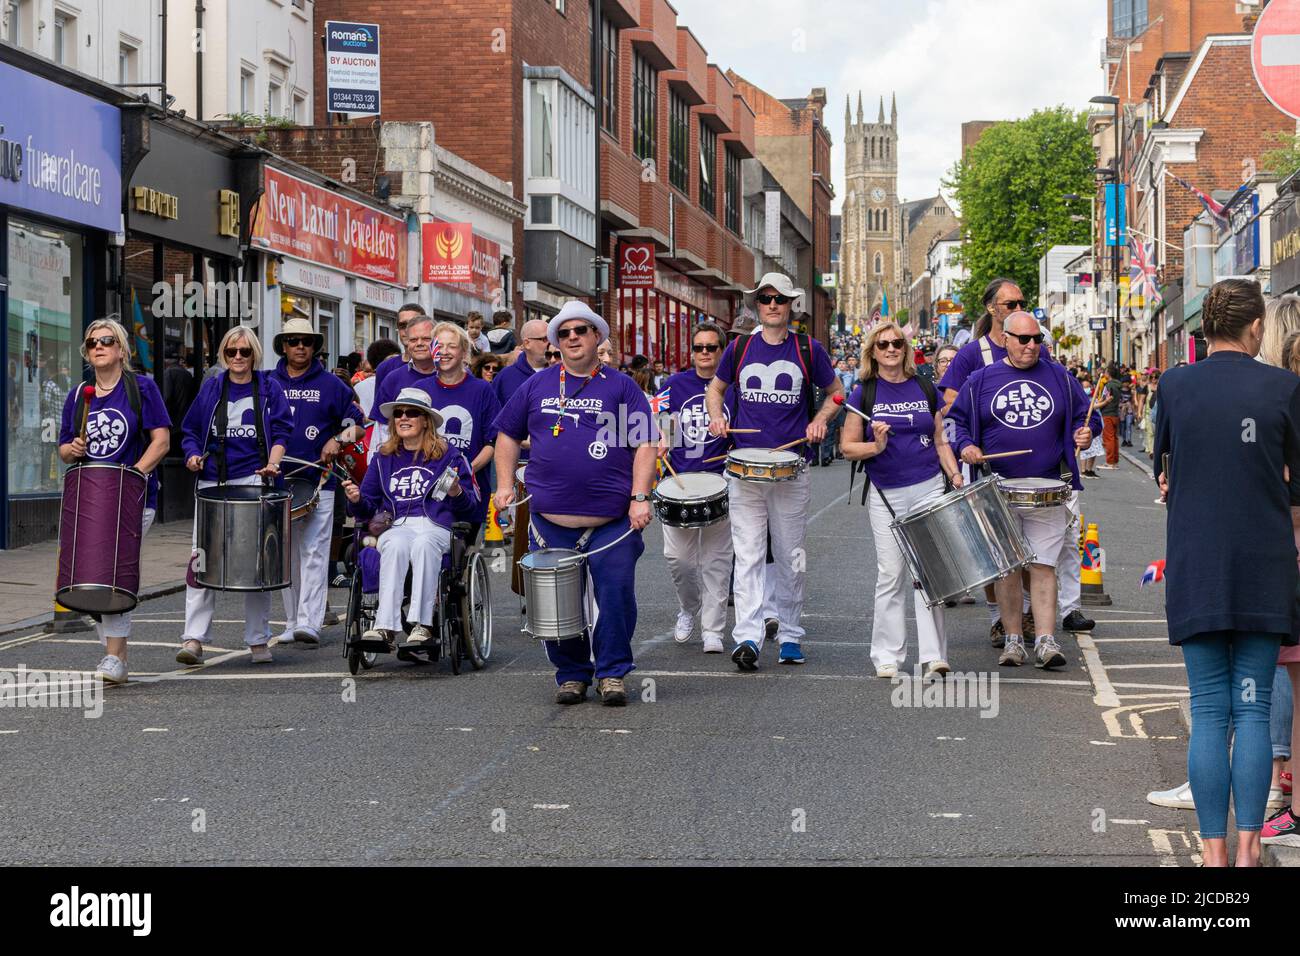 Beatroots Bateria aus Reading, einer Samba-Schlagzeuggruppe, bei der Grand Parade am Victoria Day, einer jährlichen Veranstaltung in Aldershot, Hampshire, England, Großbritannien Stockfoto